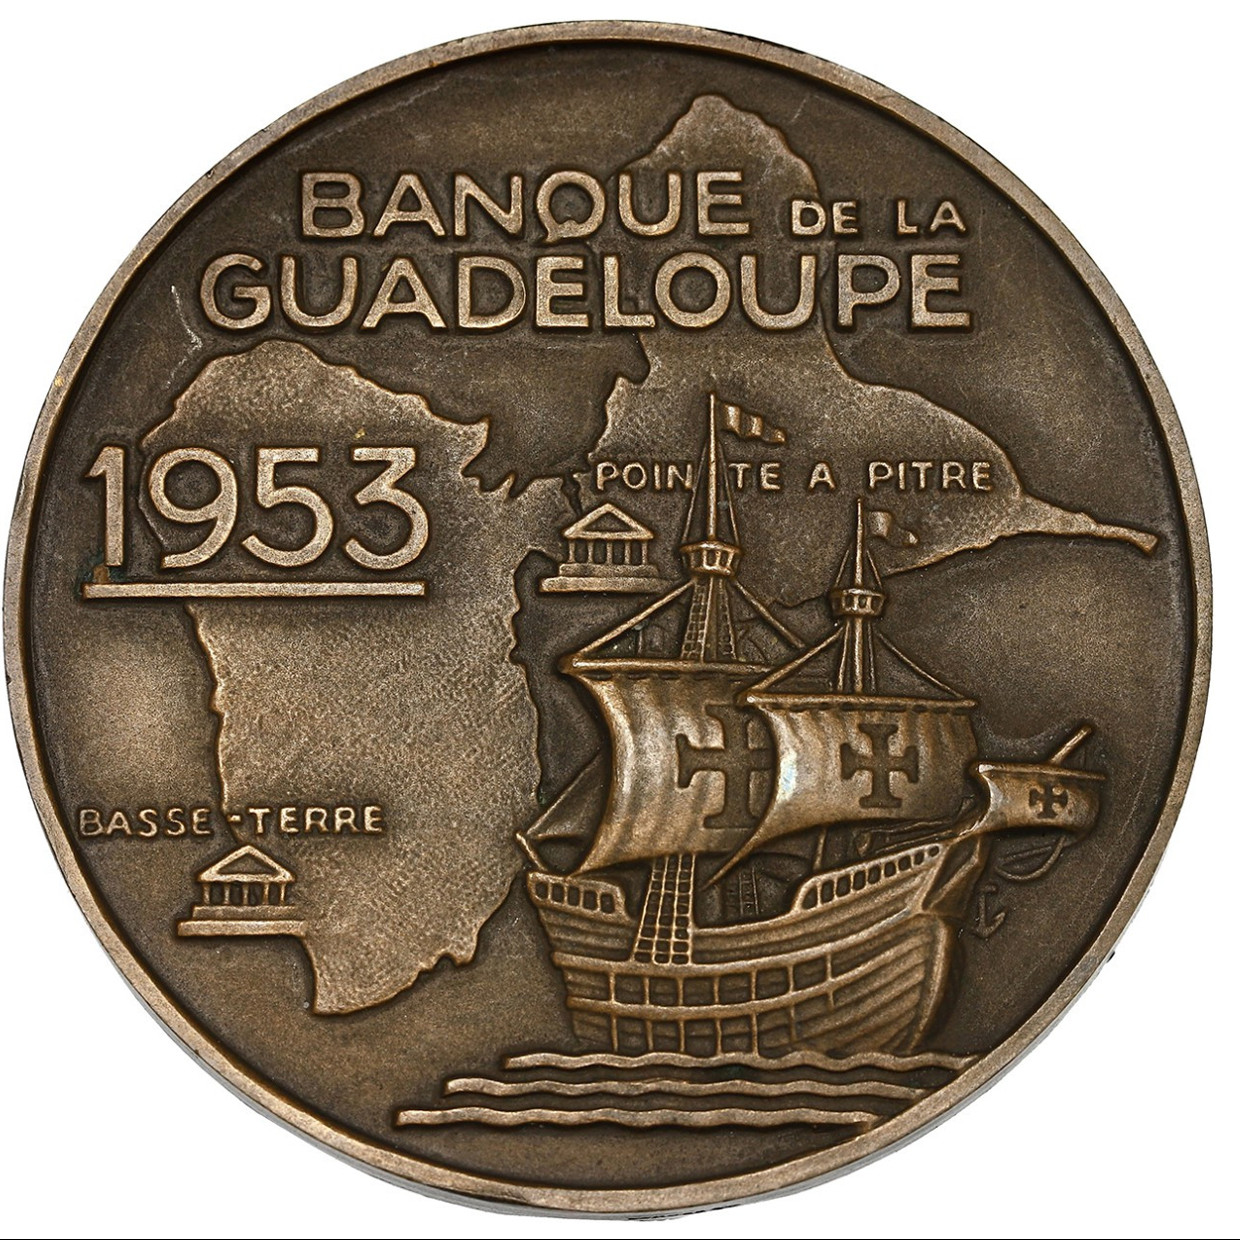 Guadeloupe - Médaille en bronze - 1953 revers